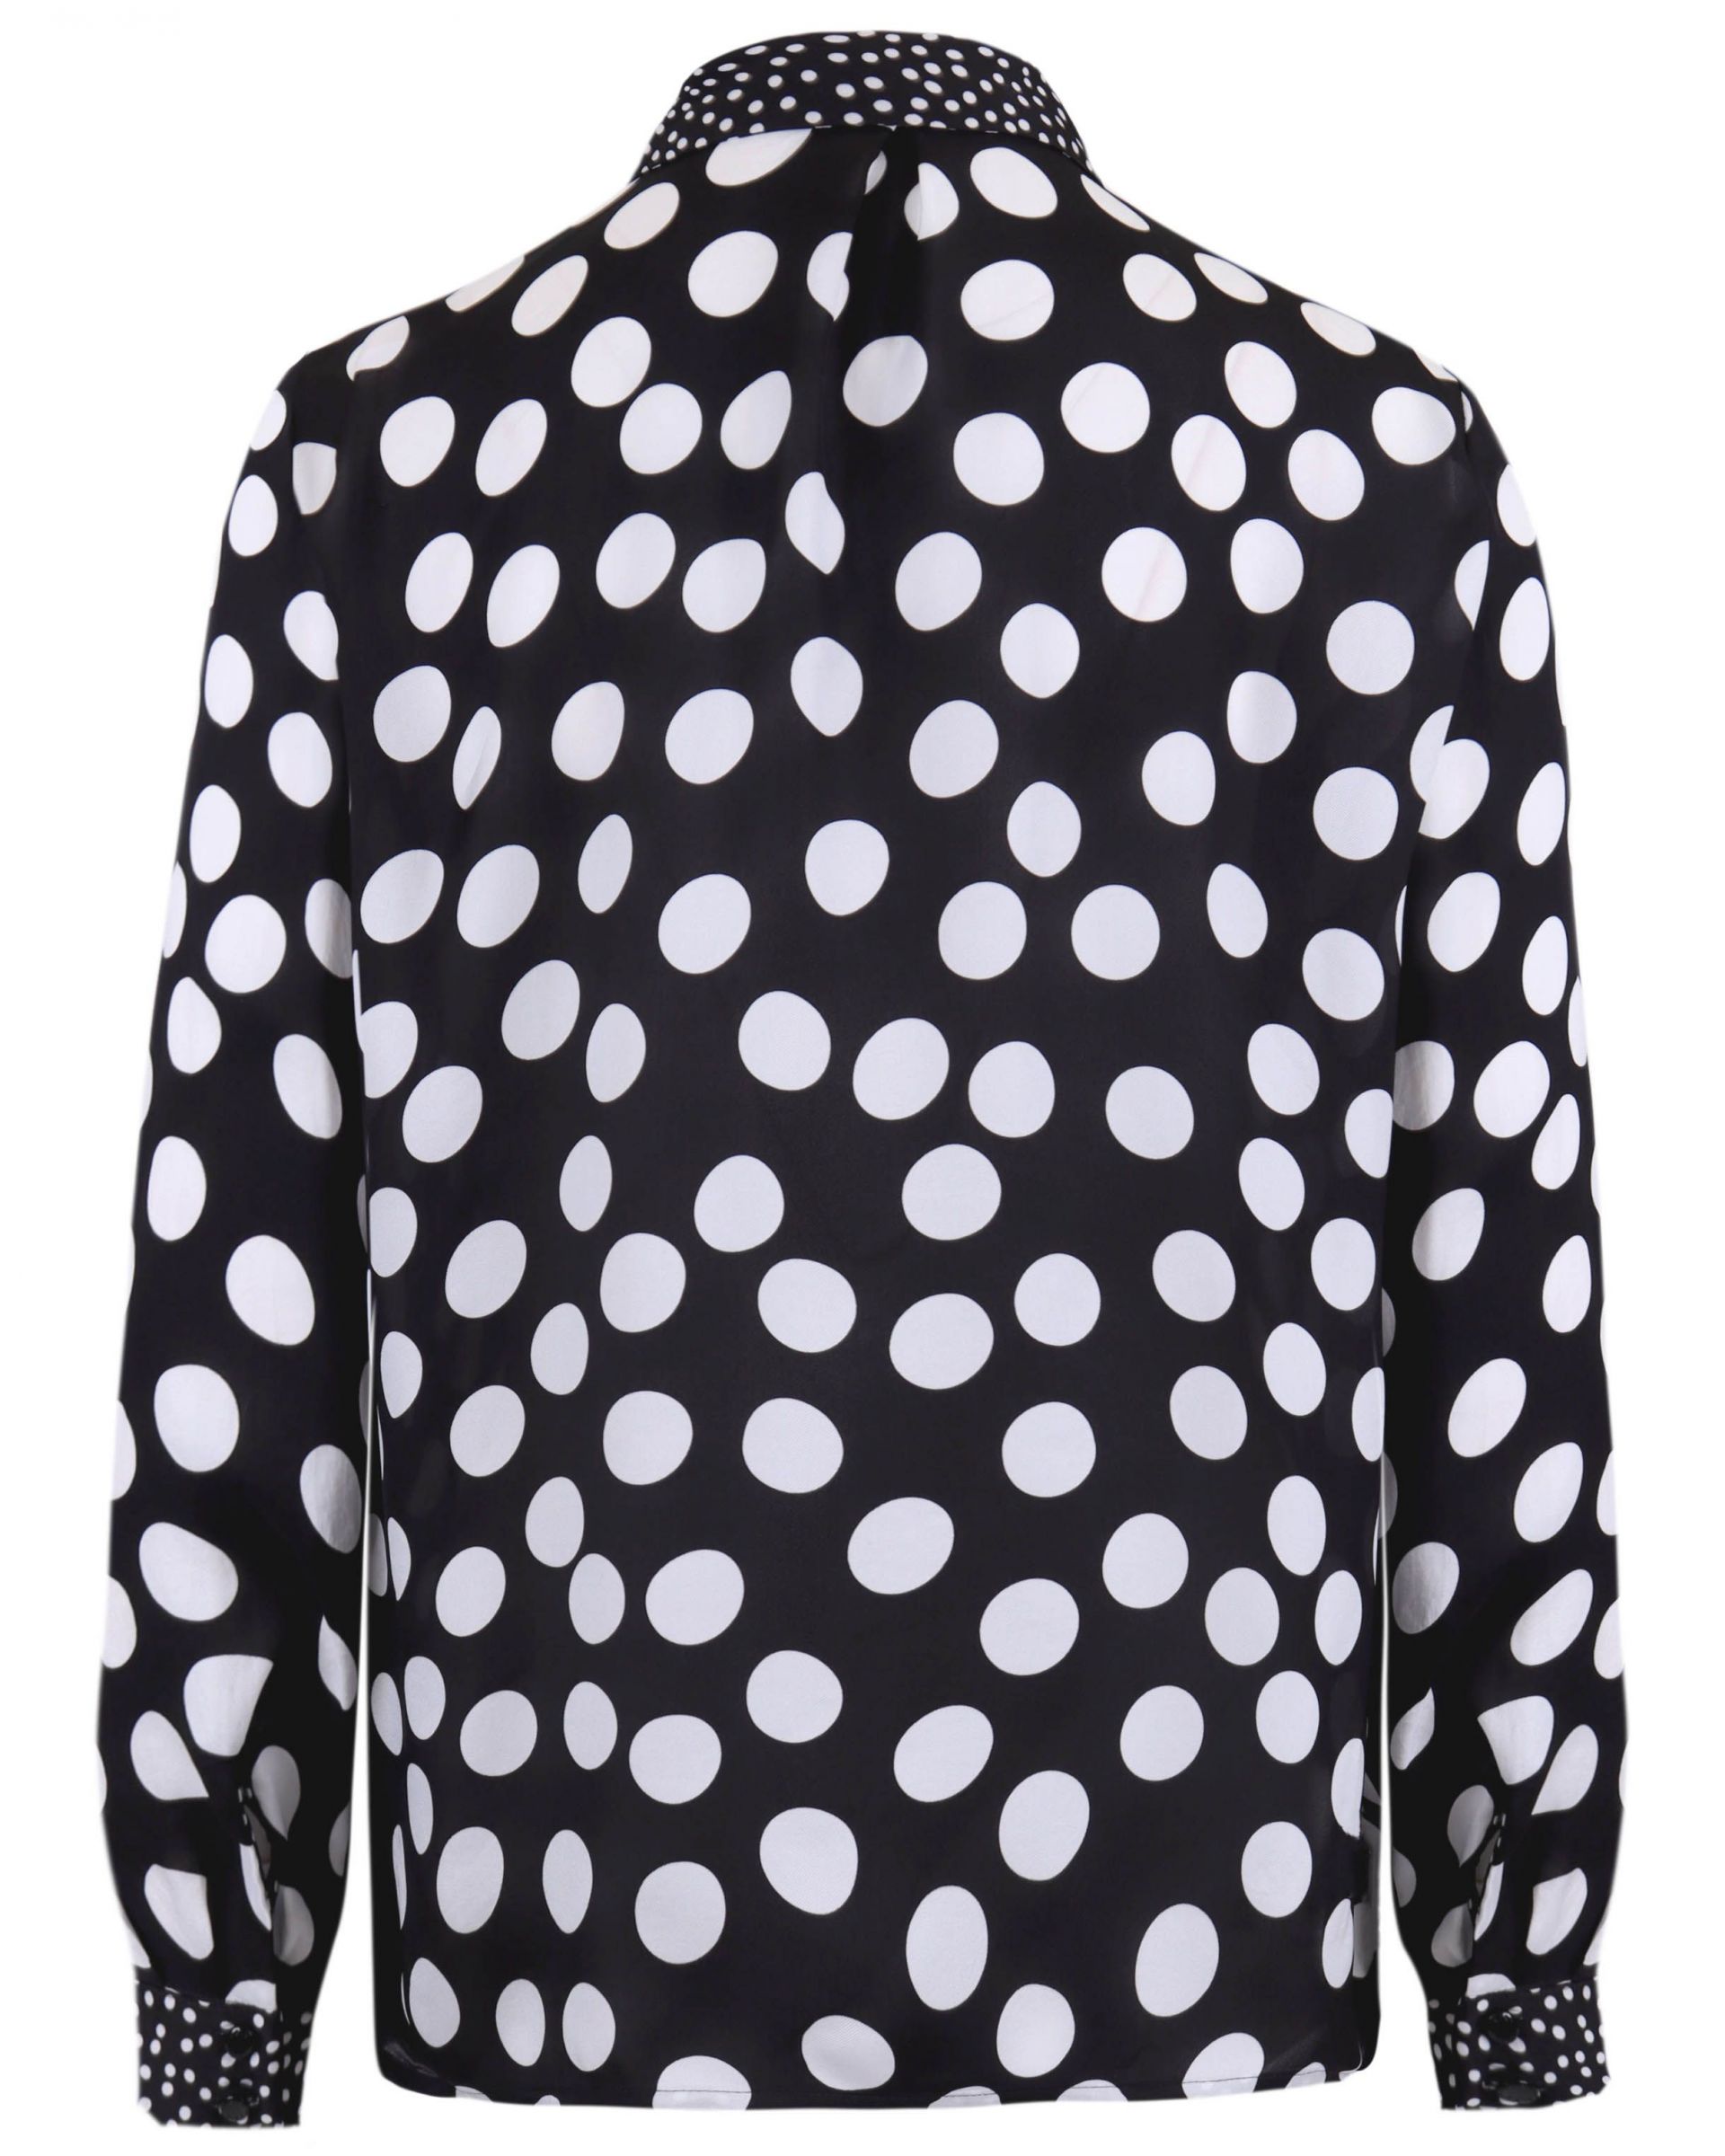 Chiffon shirt with dots  1